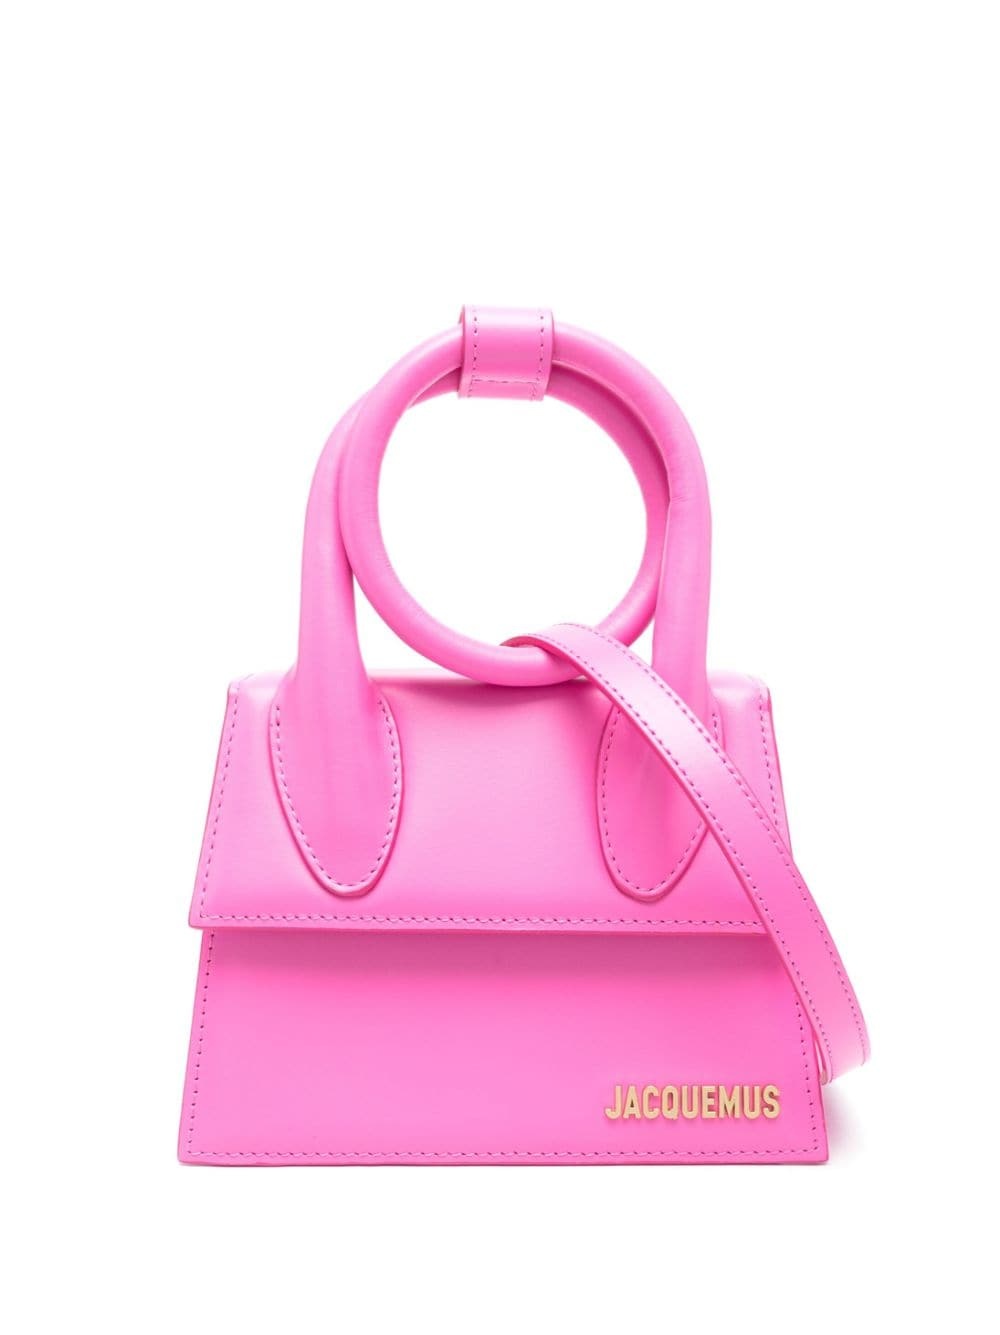 Le chiquito noeud handbag - 1